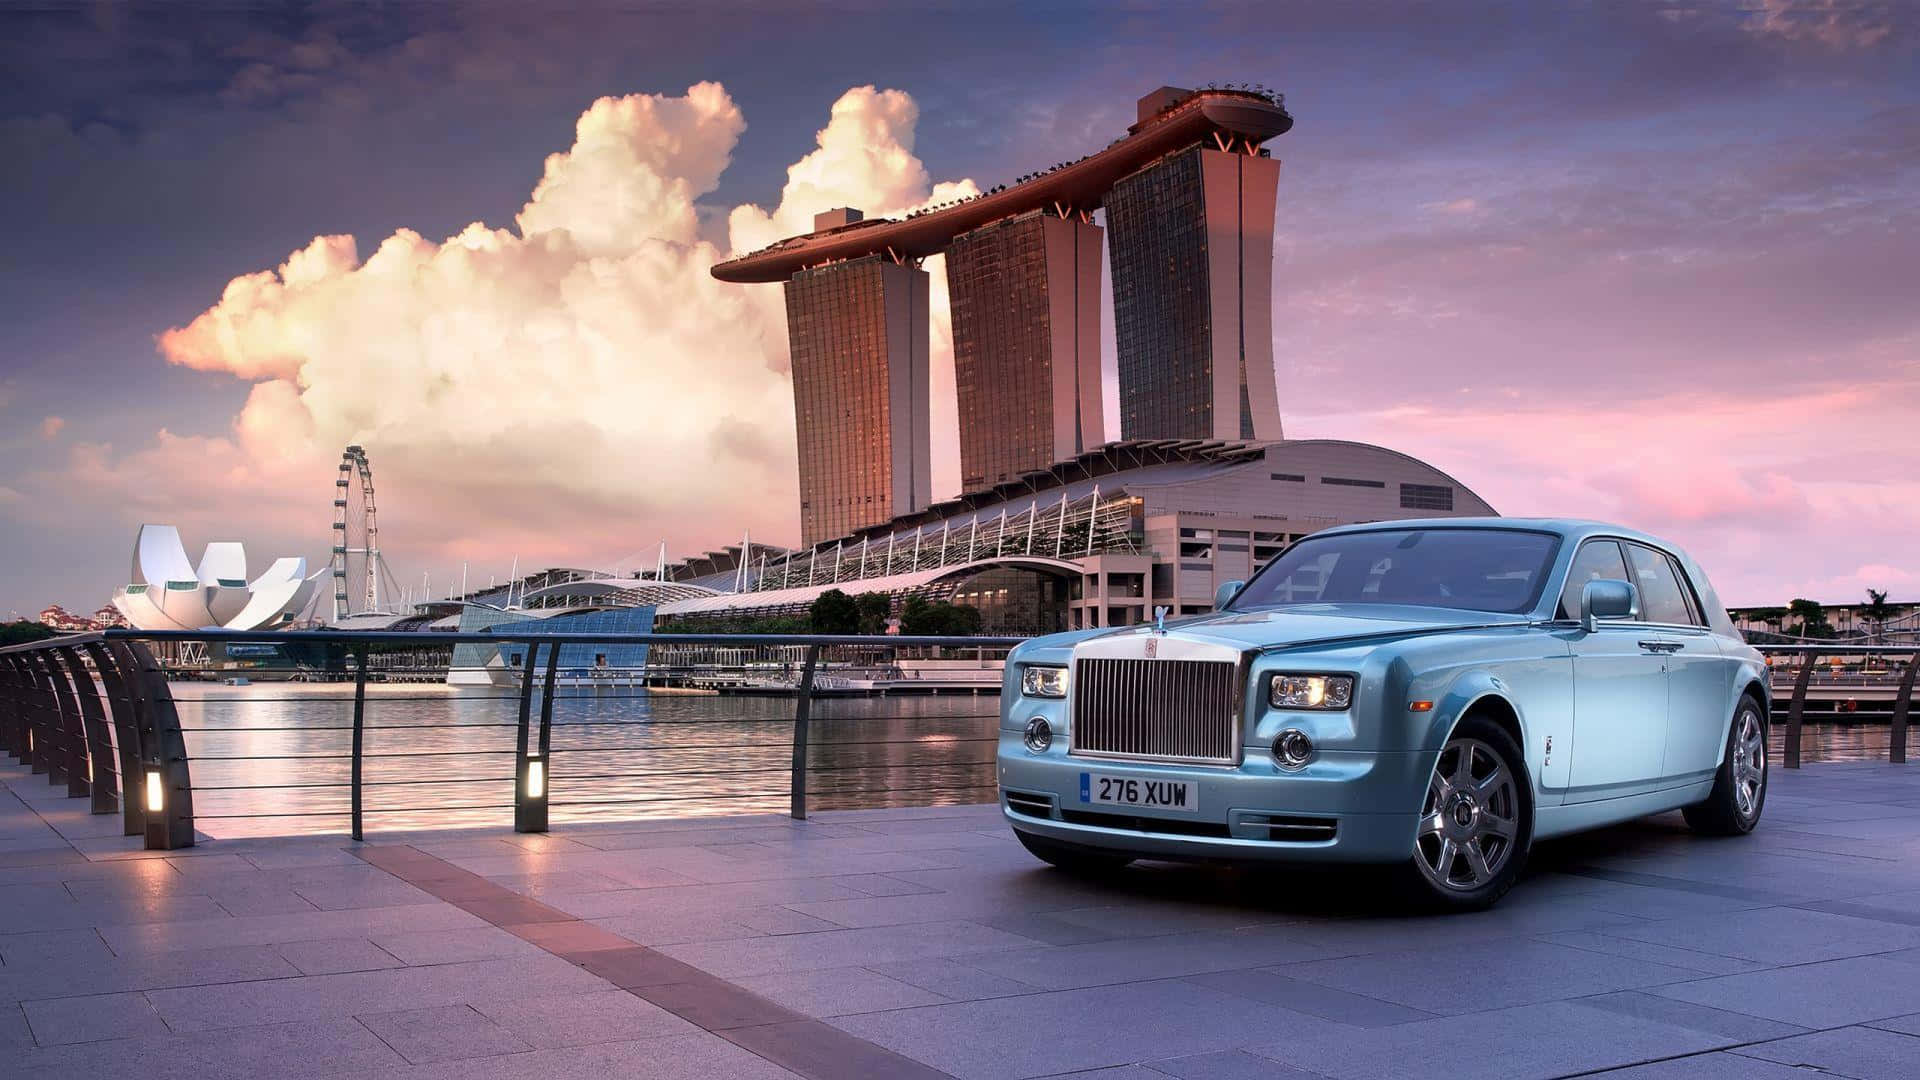 Luxury Rolls Royce on a scenic road